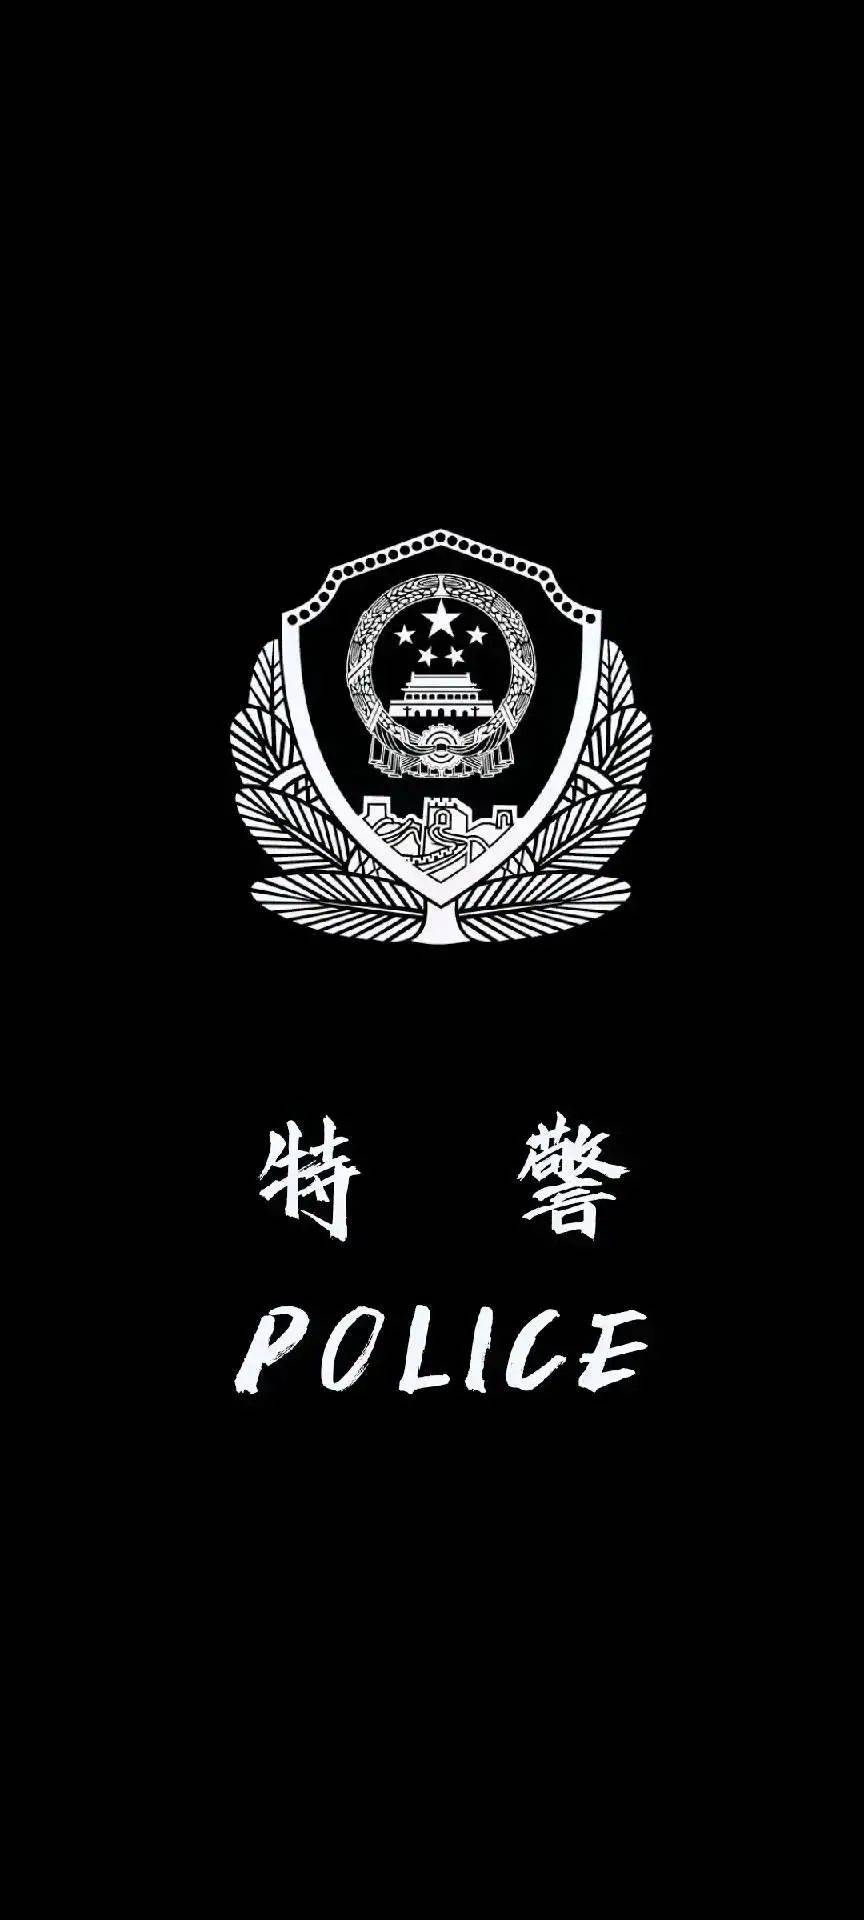 police警察手机壁纸图片